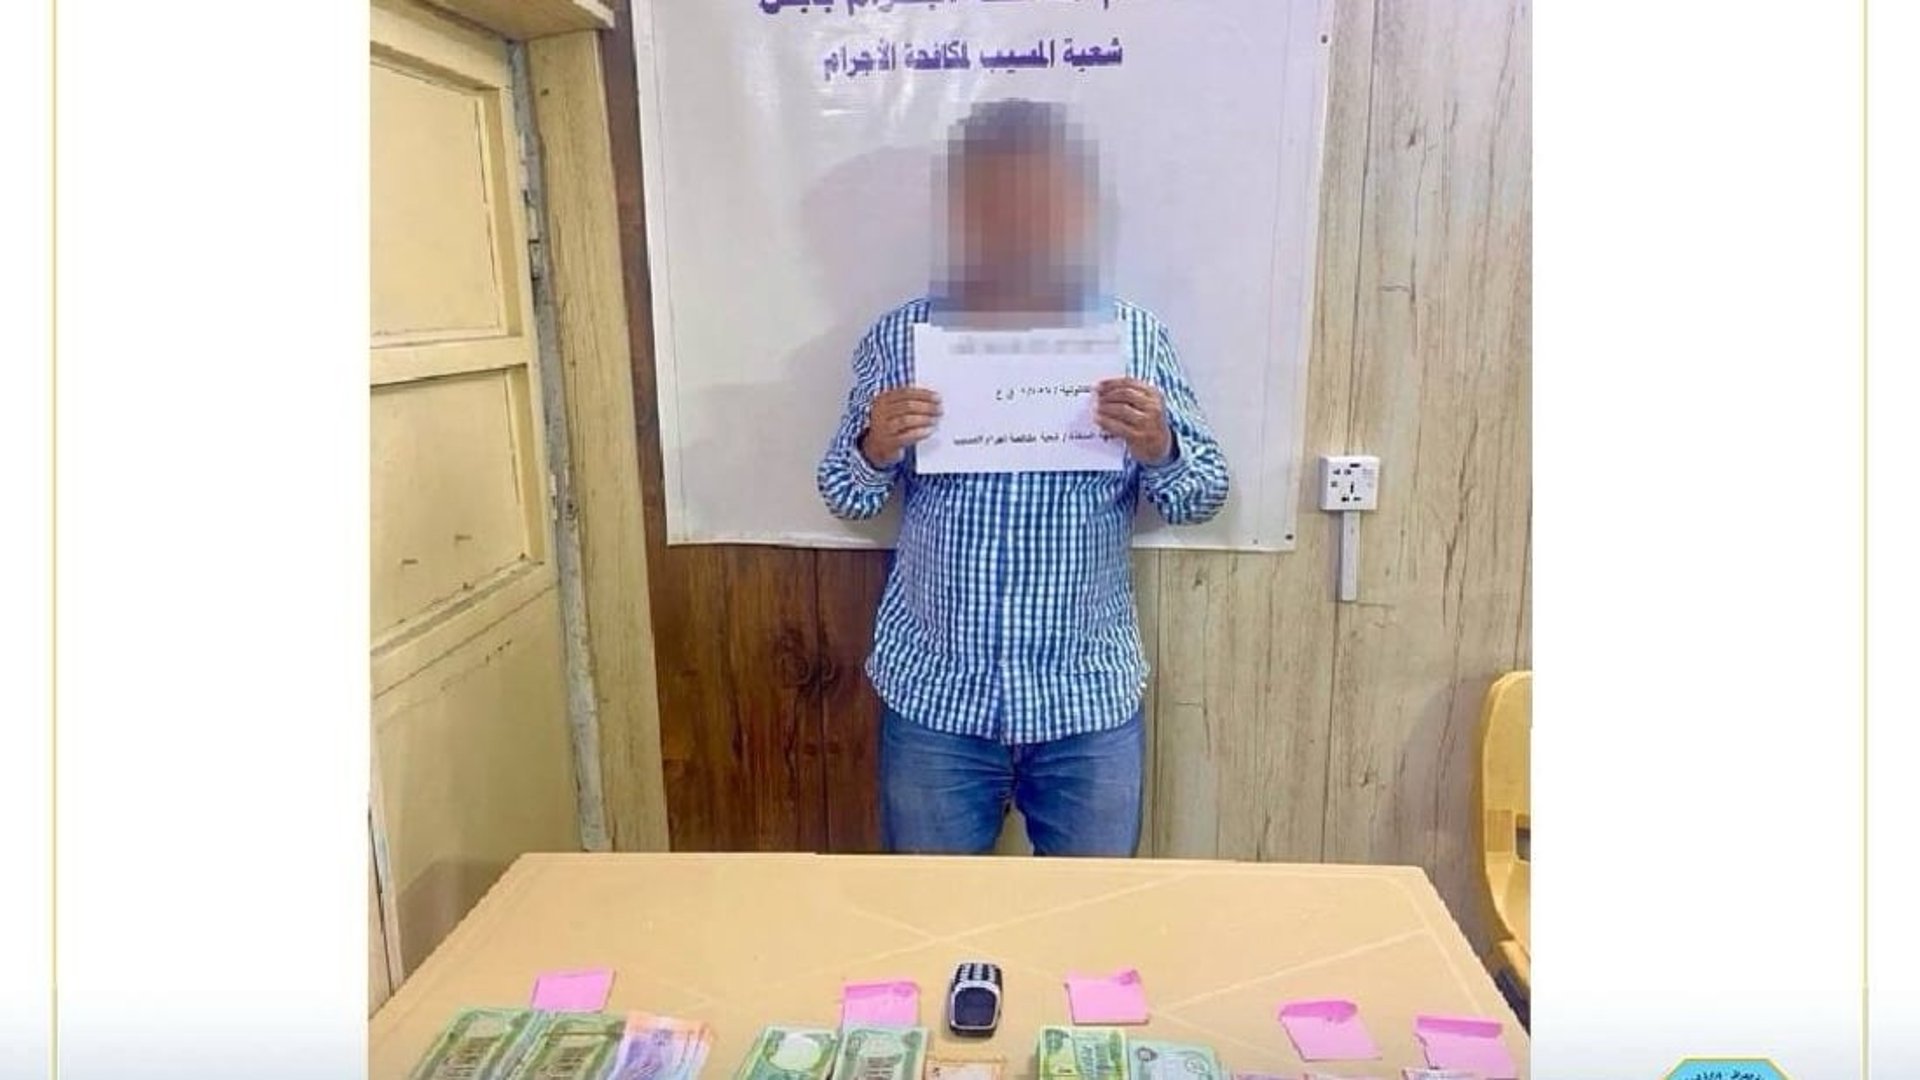 Babil police arrest man posing as wealthy Gulf citizen